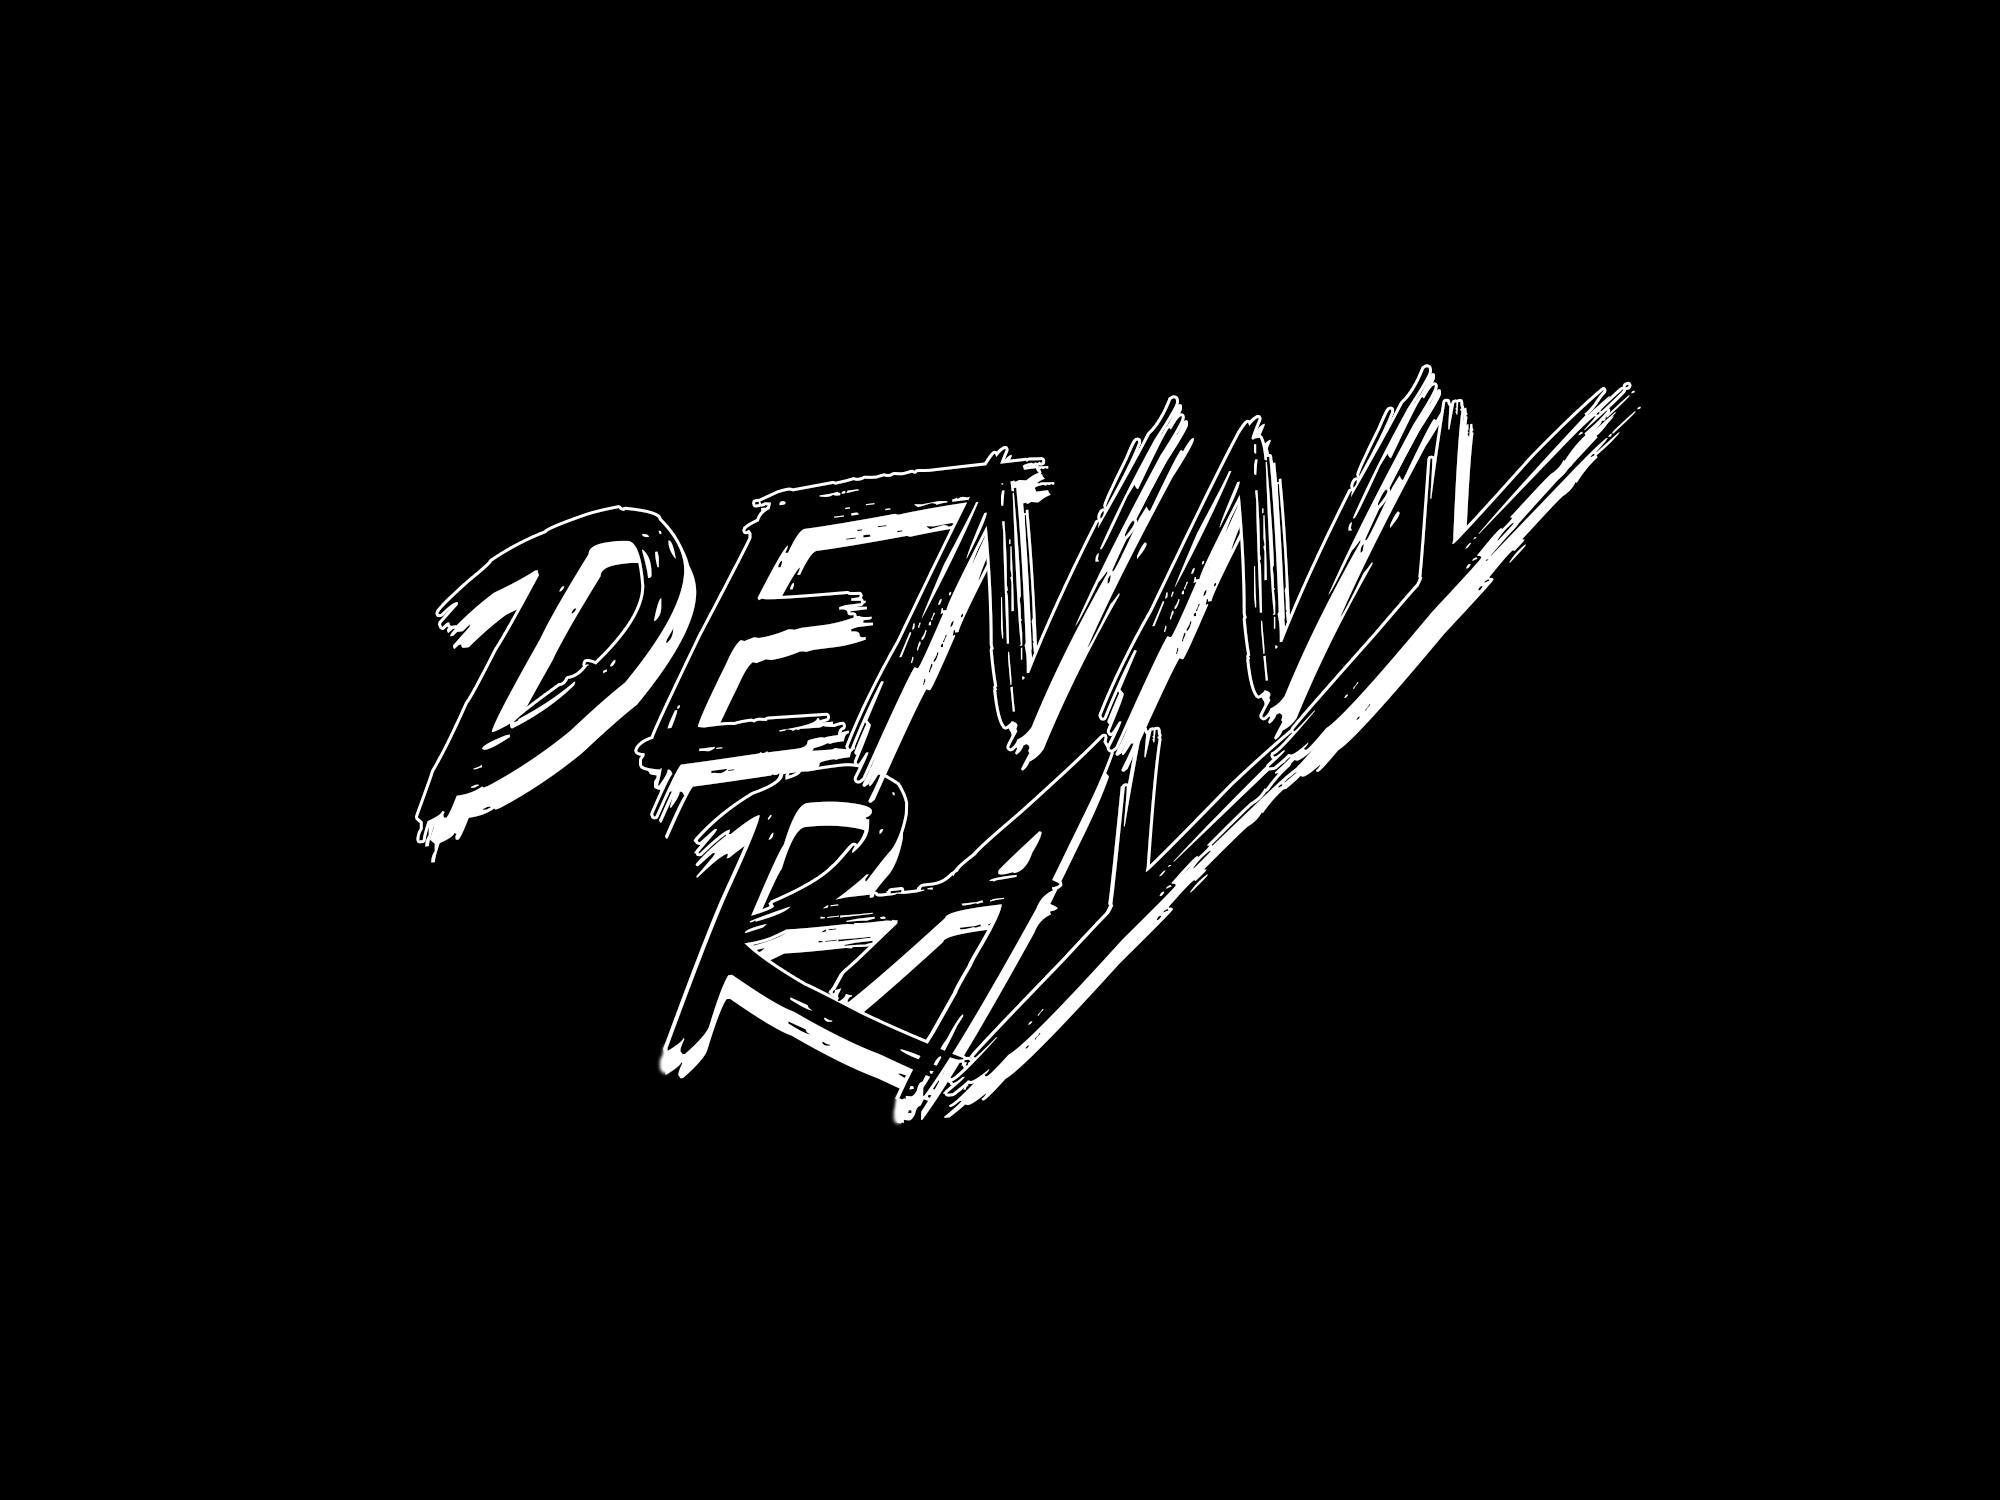 Denny Ray